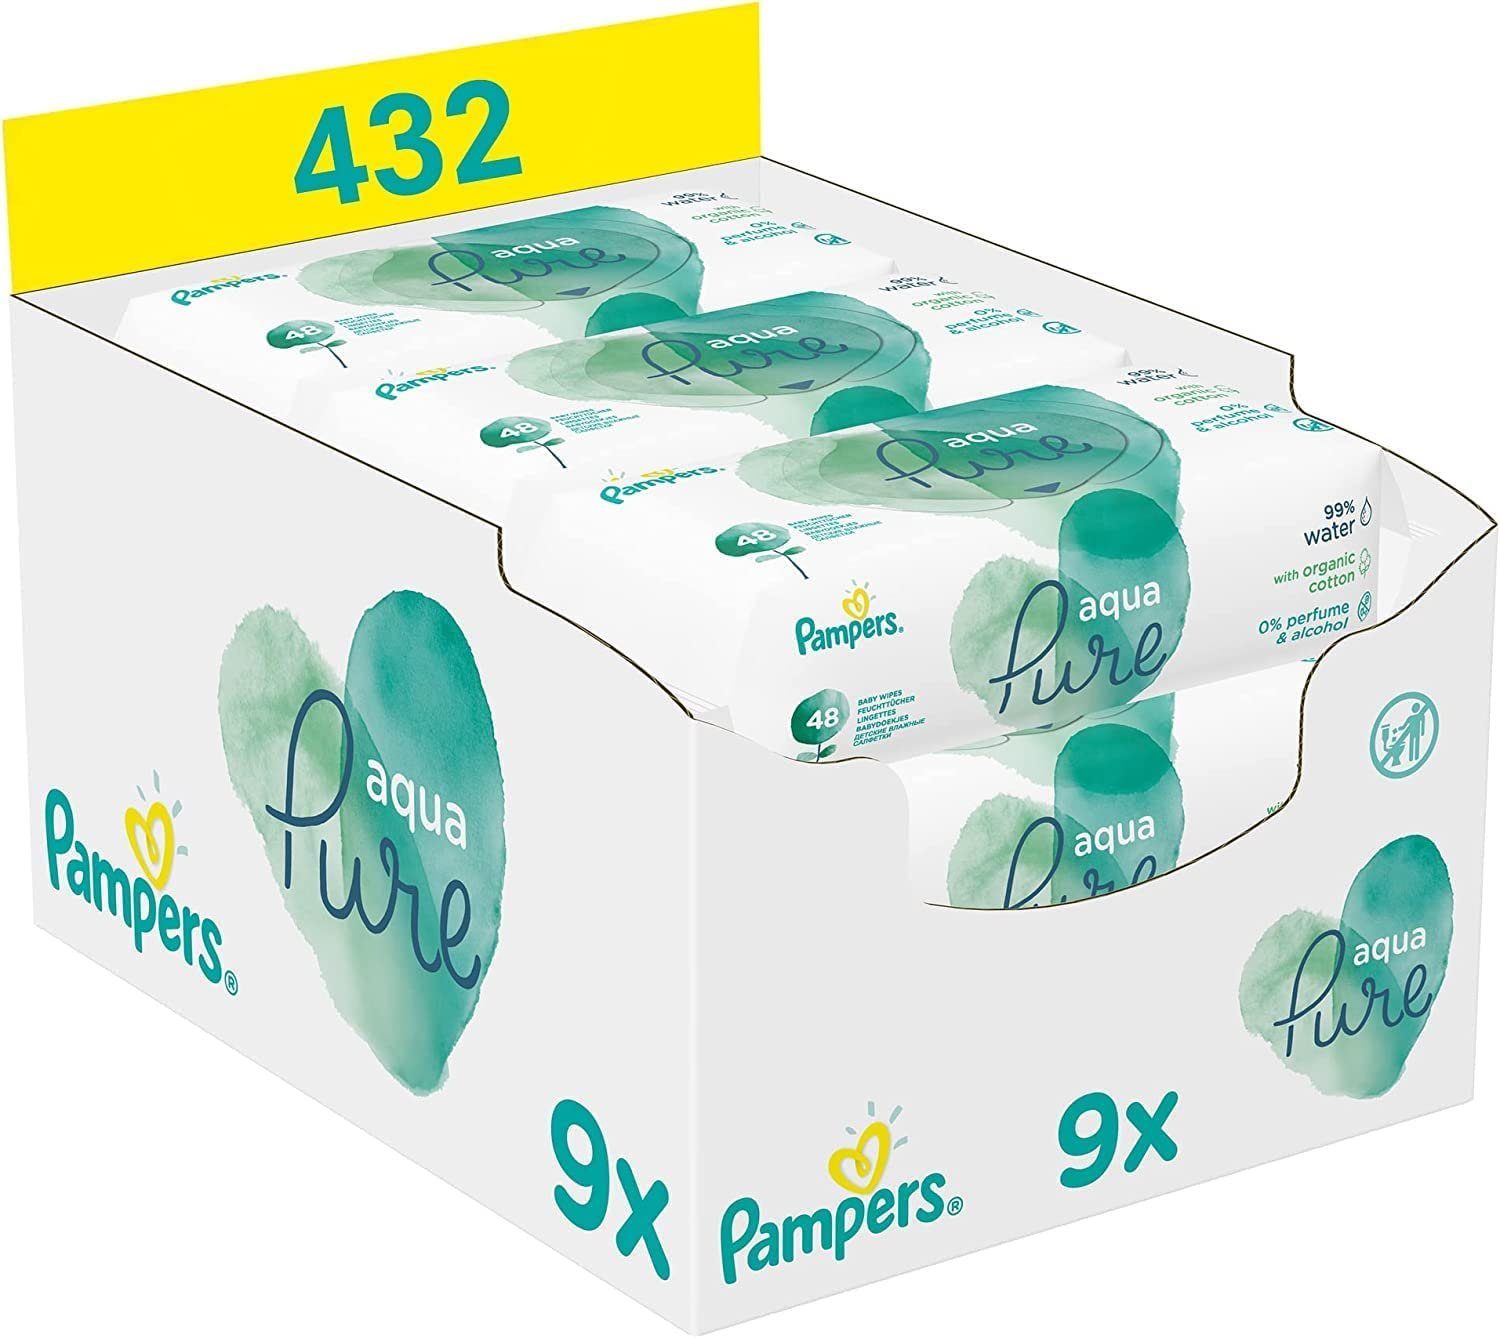 Pampers feuchtes Toilettenpapier Aqua Pure Baby Feuchttücher, mit 99 %  purem Wasser und Bio-Baumwolle, 432-tlg.